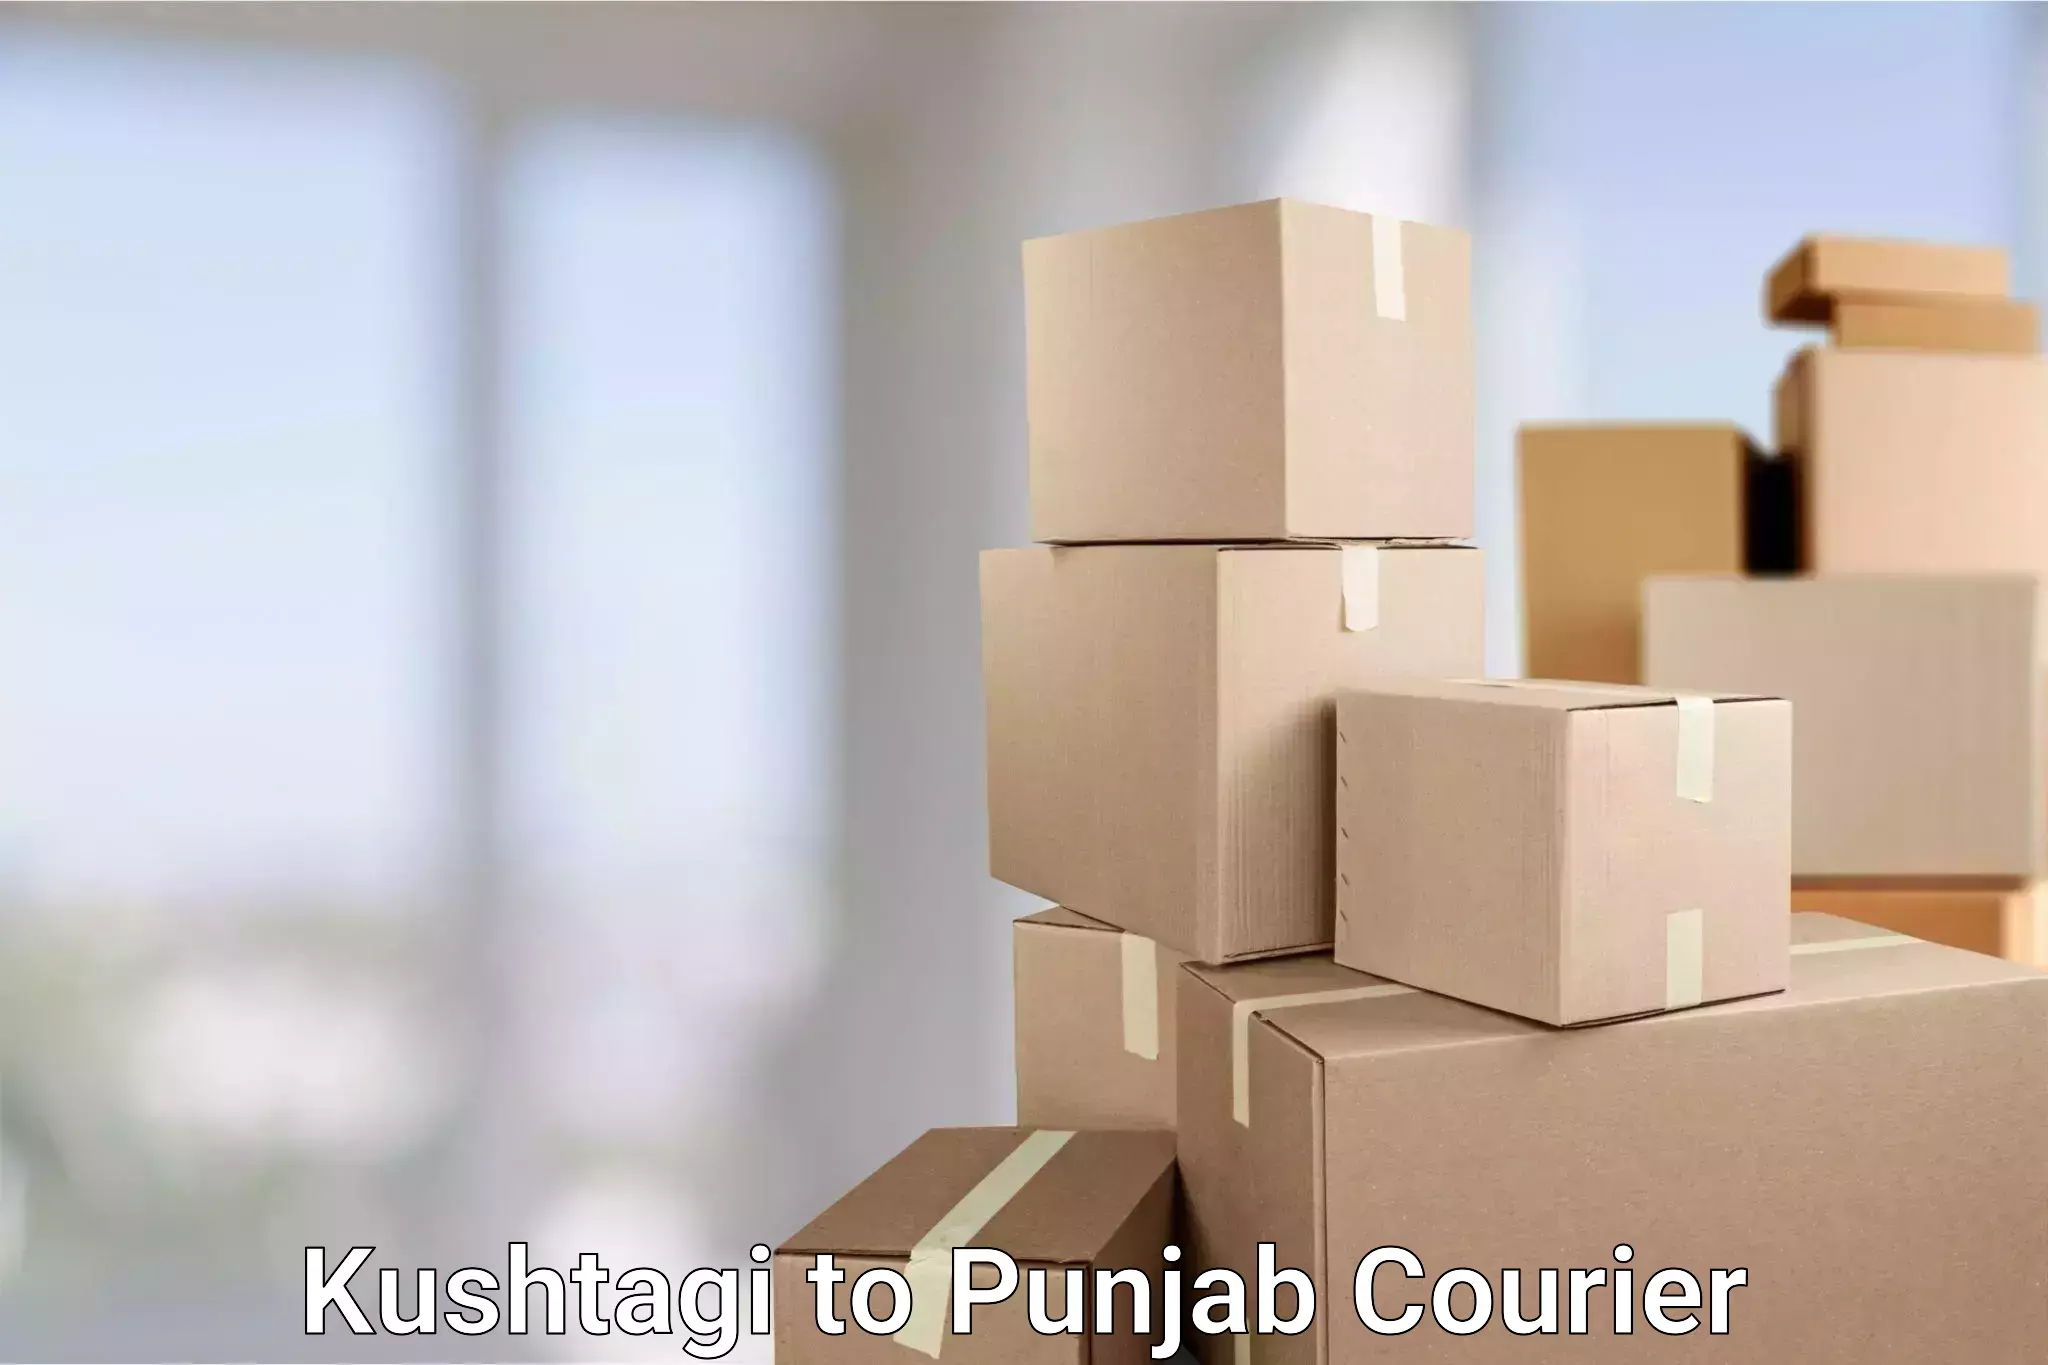 State-of-the-art courier technology Kushtagi to Central University of Punjab Bathinda